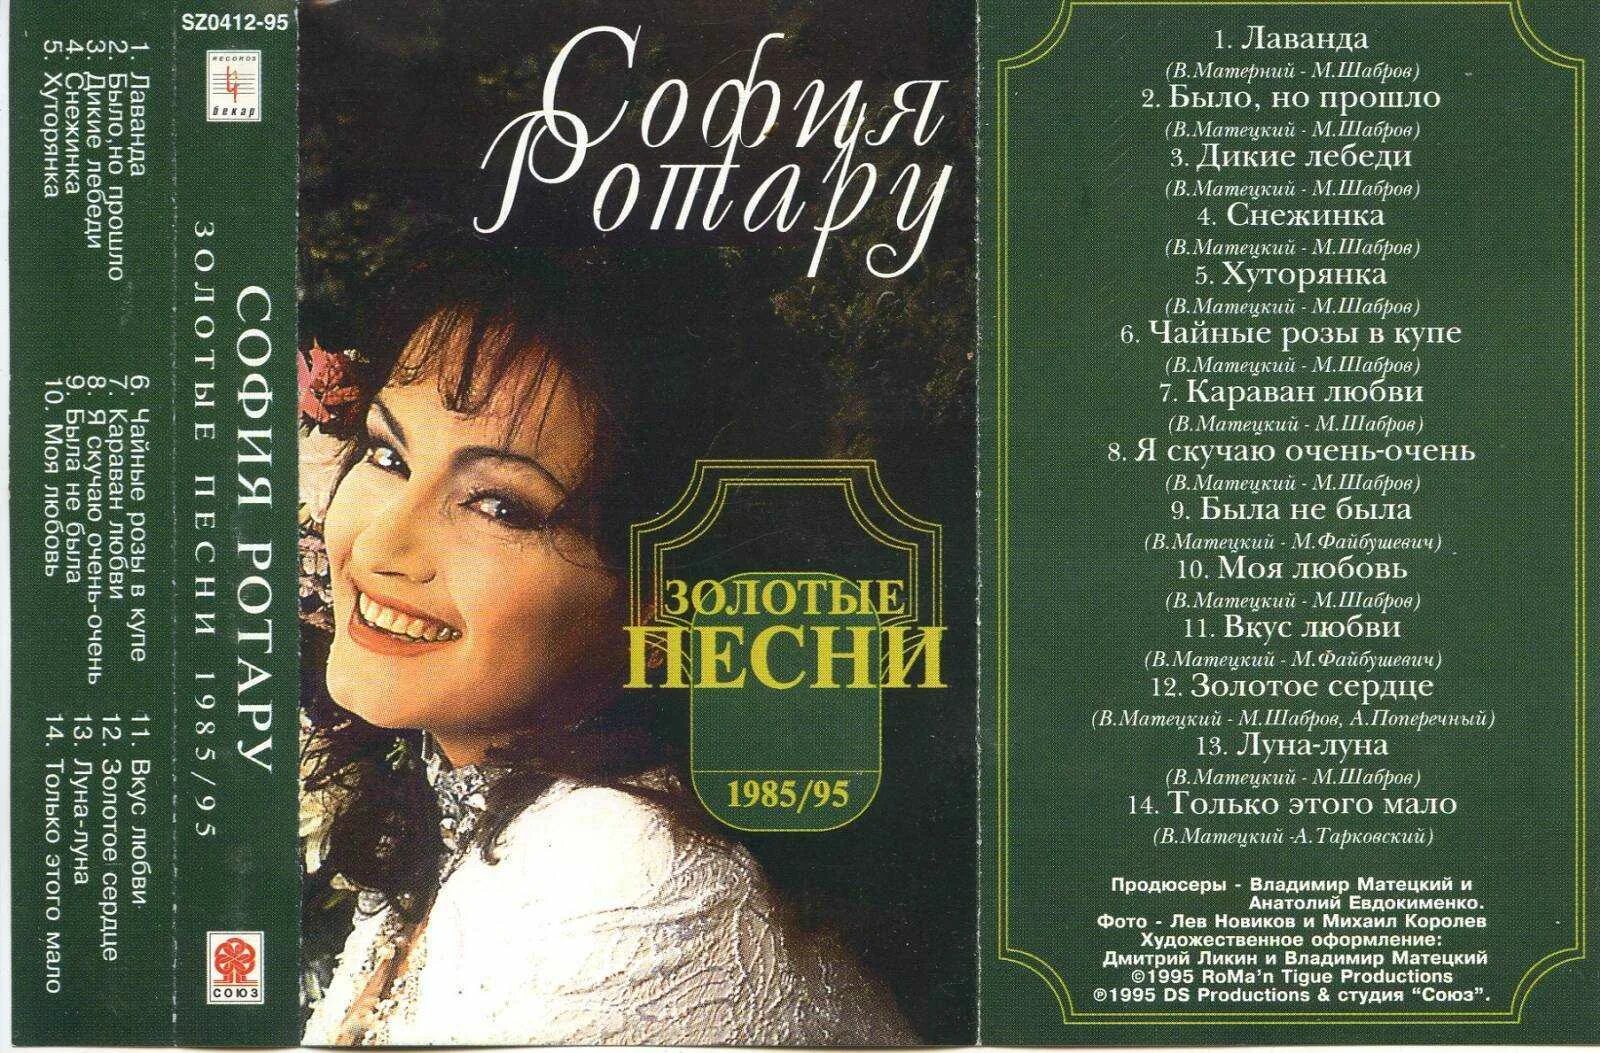 Золотой песни альбом. Софія Ротару-Караван любви 1993 CD.